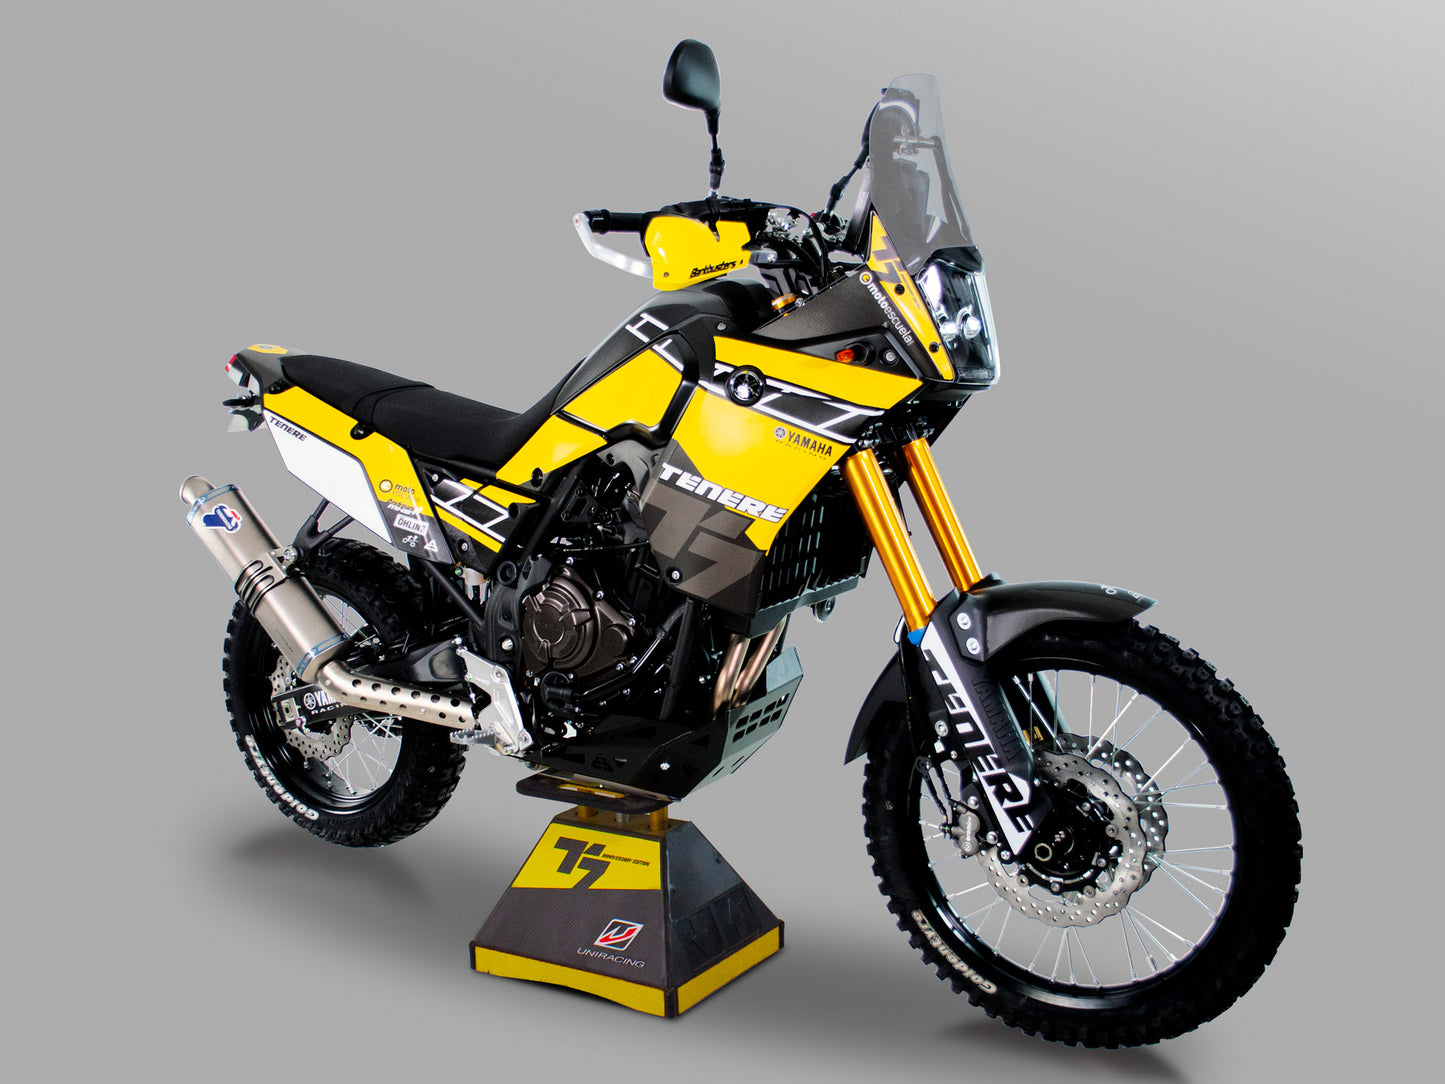 Kit de adhesivos Uniracing completo en Yamaha Tenere 700 (color amarillo)